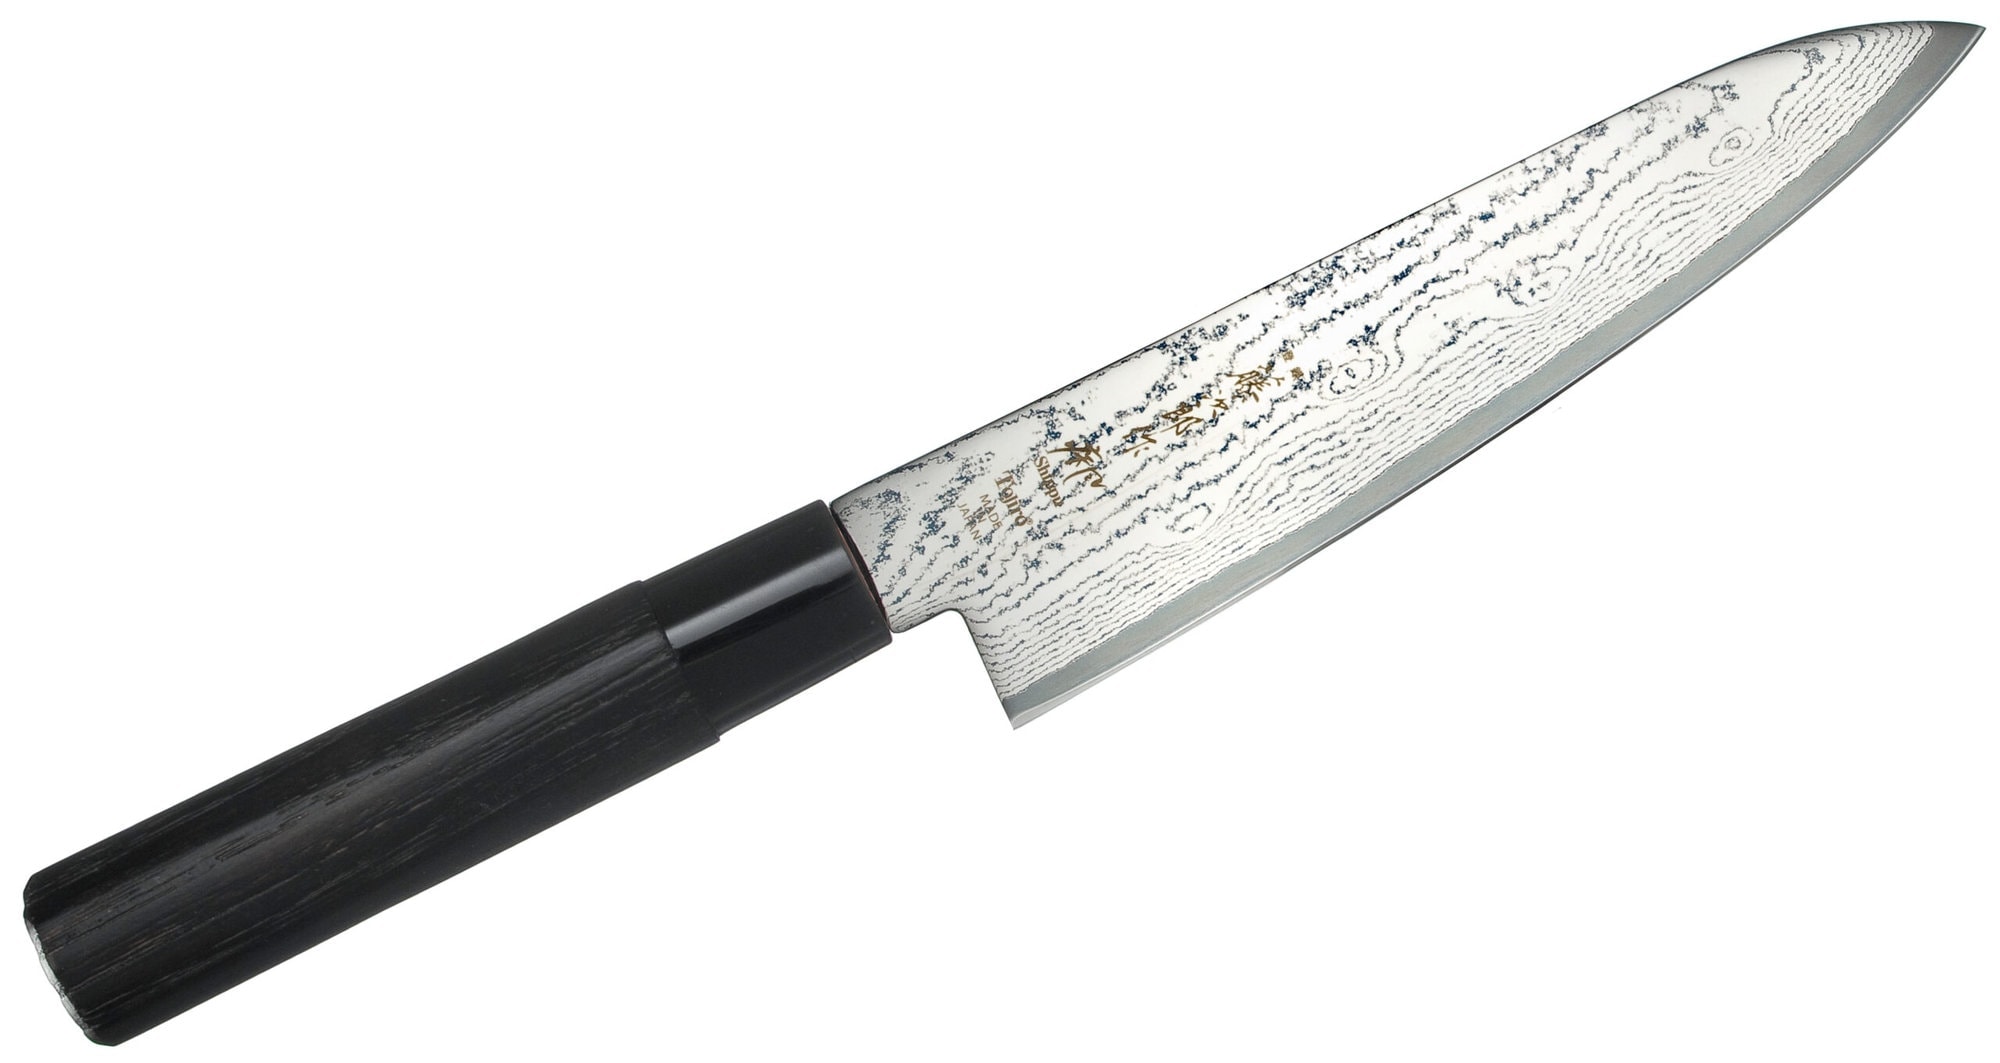 Tojiro Shippu Black Nóż szefa kuchni 18cm